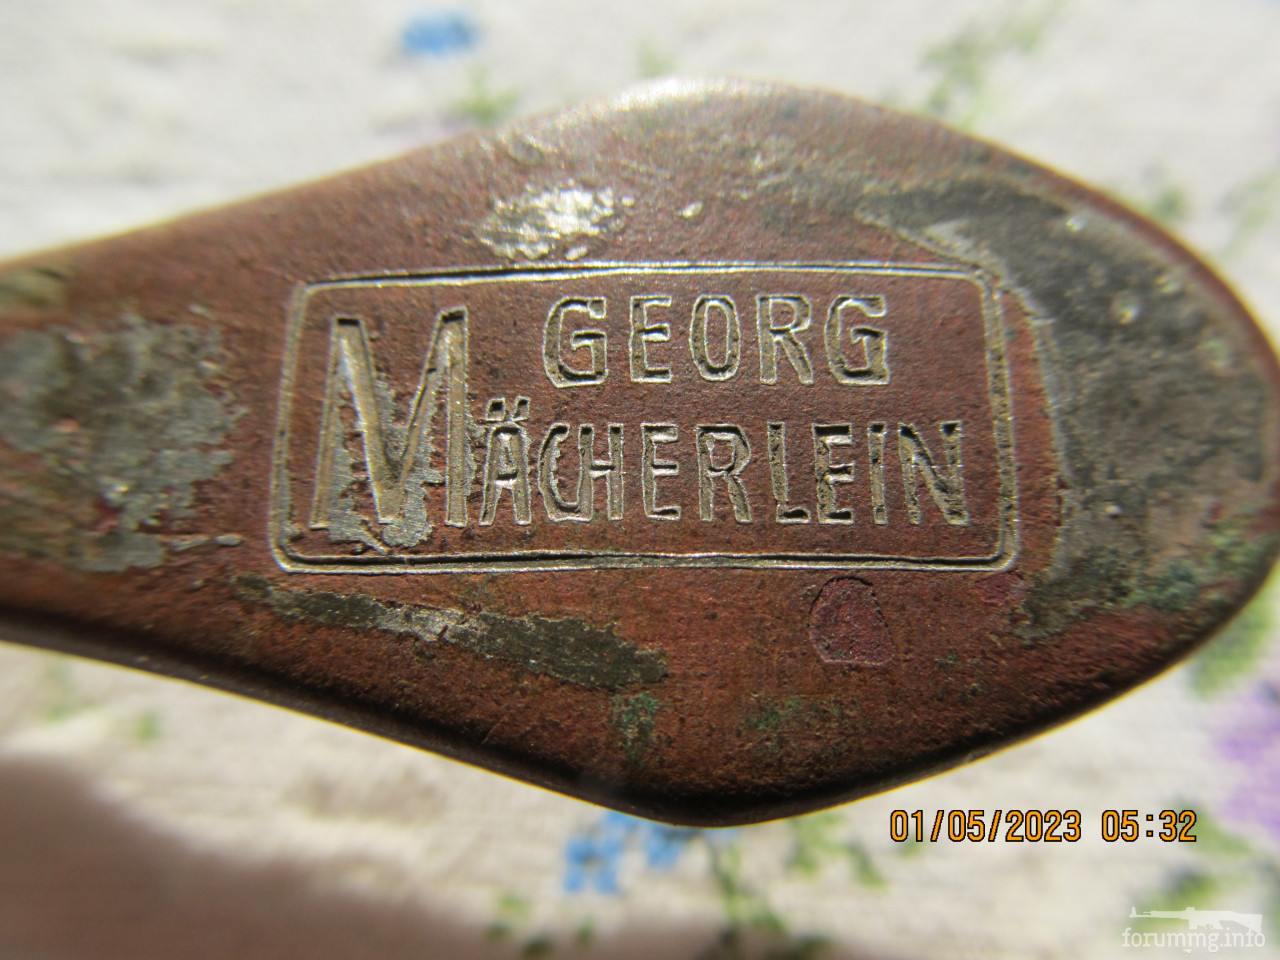 136541 - Ложка "Georg Macherlein" на визначення